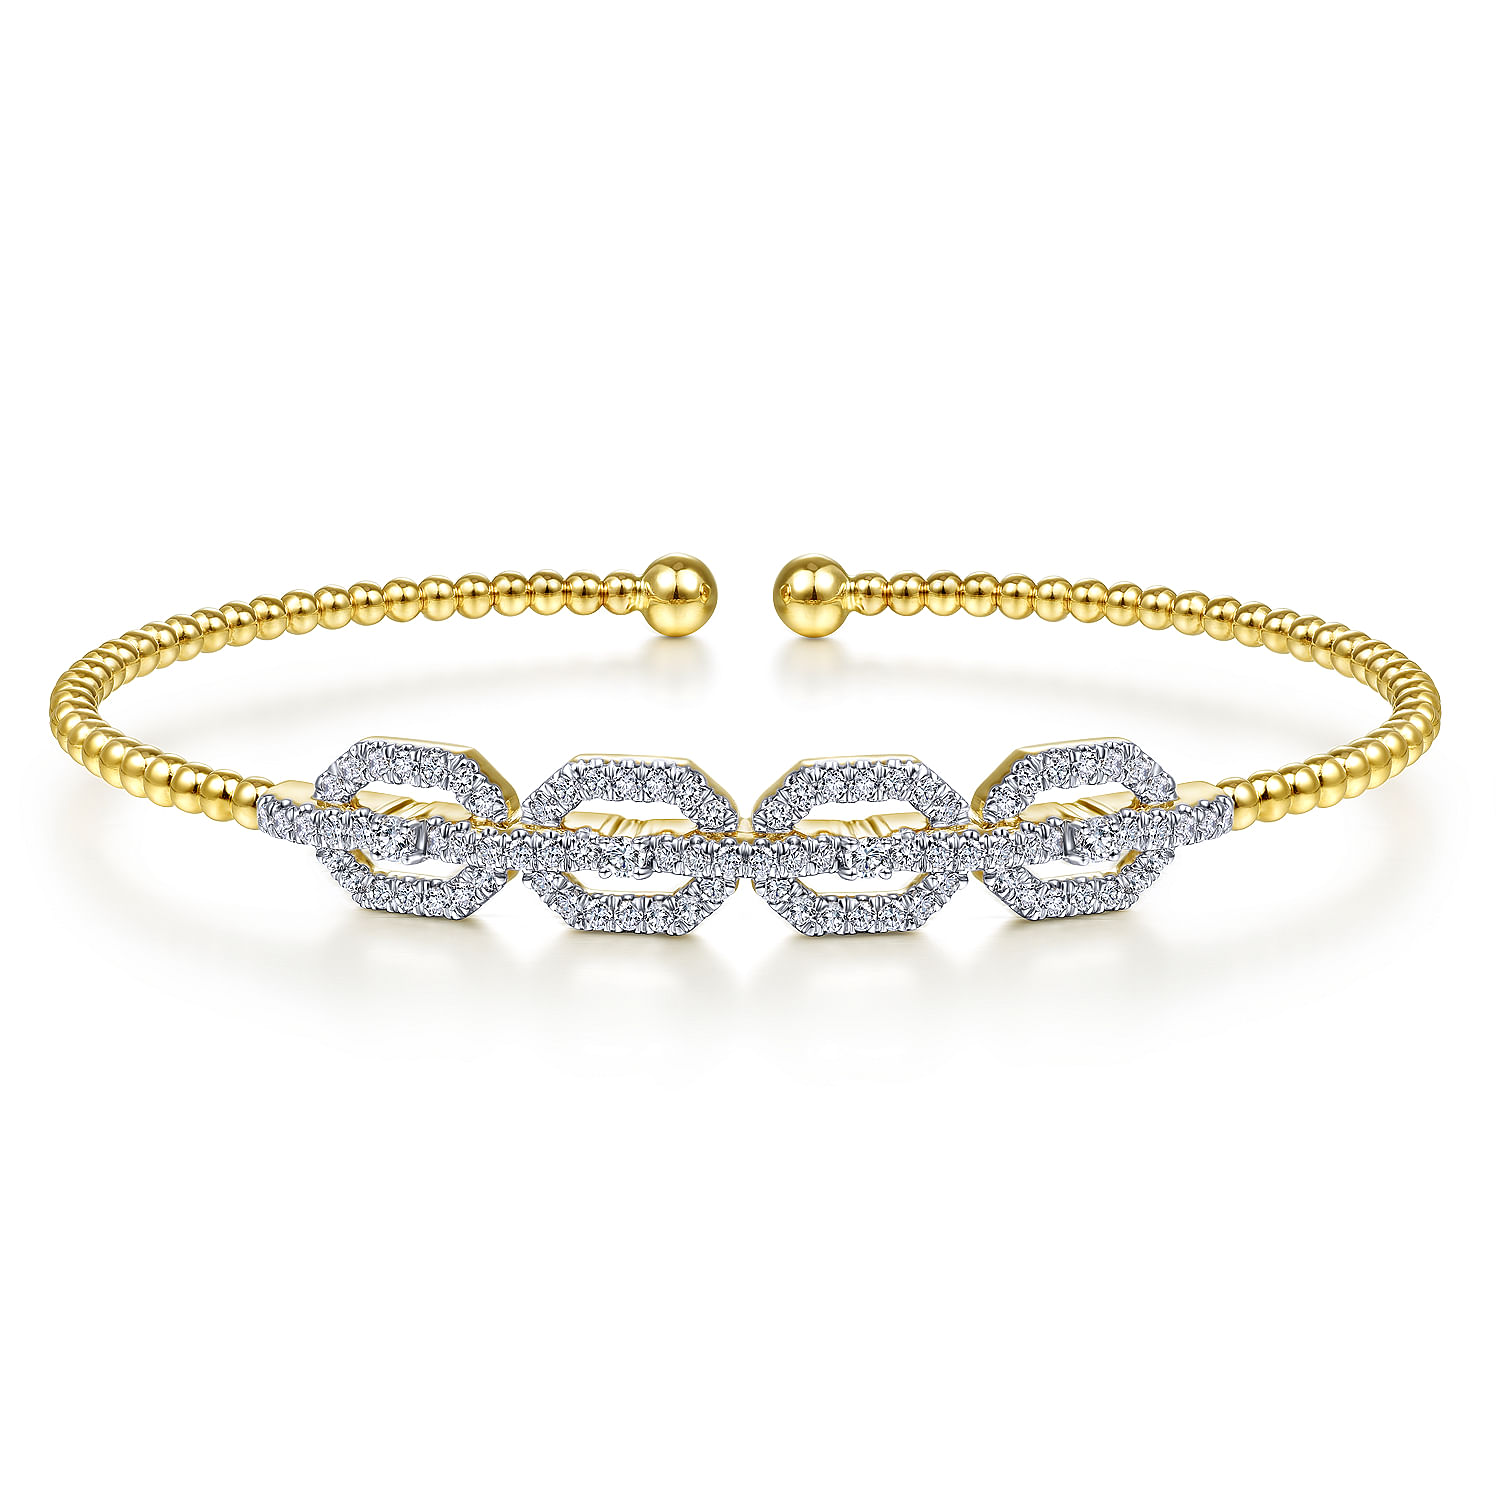 14K Yellow Gold Bujukan Bead Cuff Bracelet with Diamond Pav¿ª Links